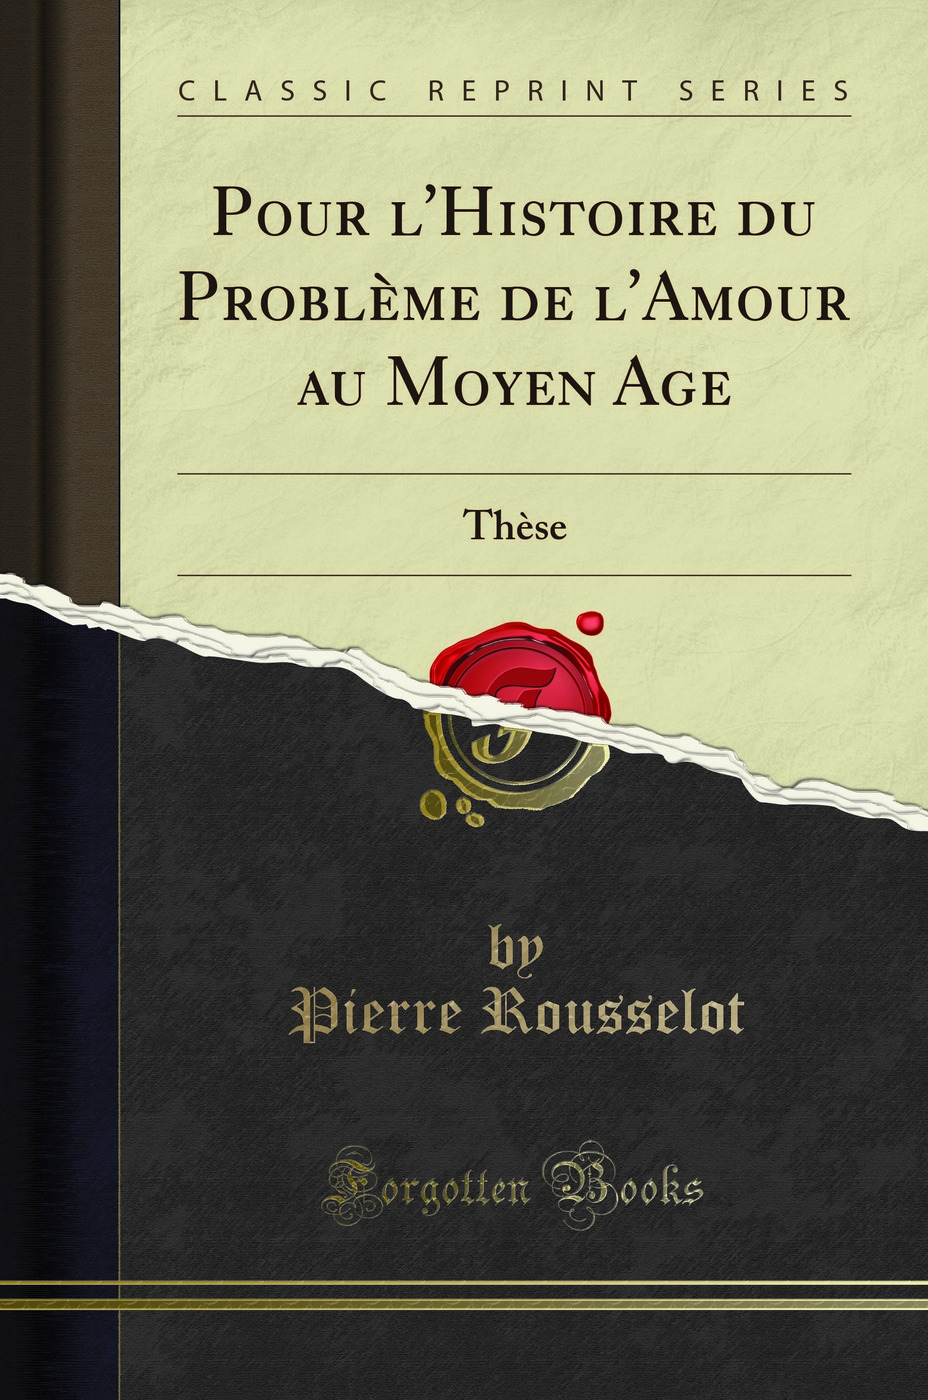 Pour l'Histoire du ProblÃ me de l'Amour au Moyen Age: ThÃ se (Classic Reprint) - Pierre Rousselot